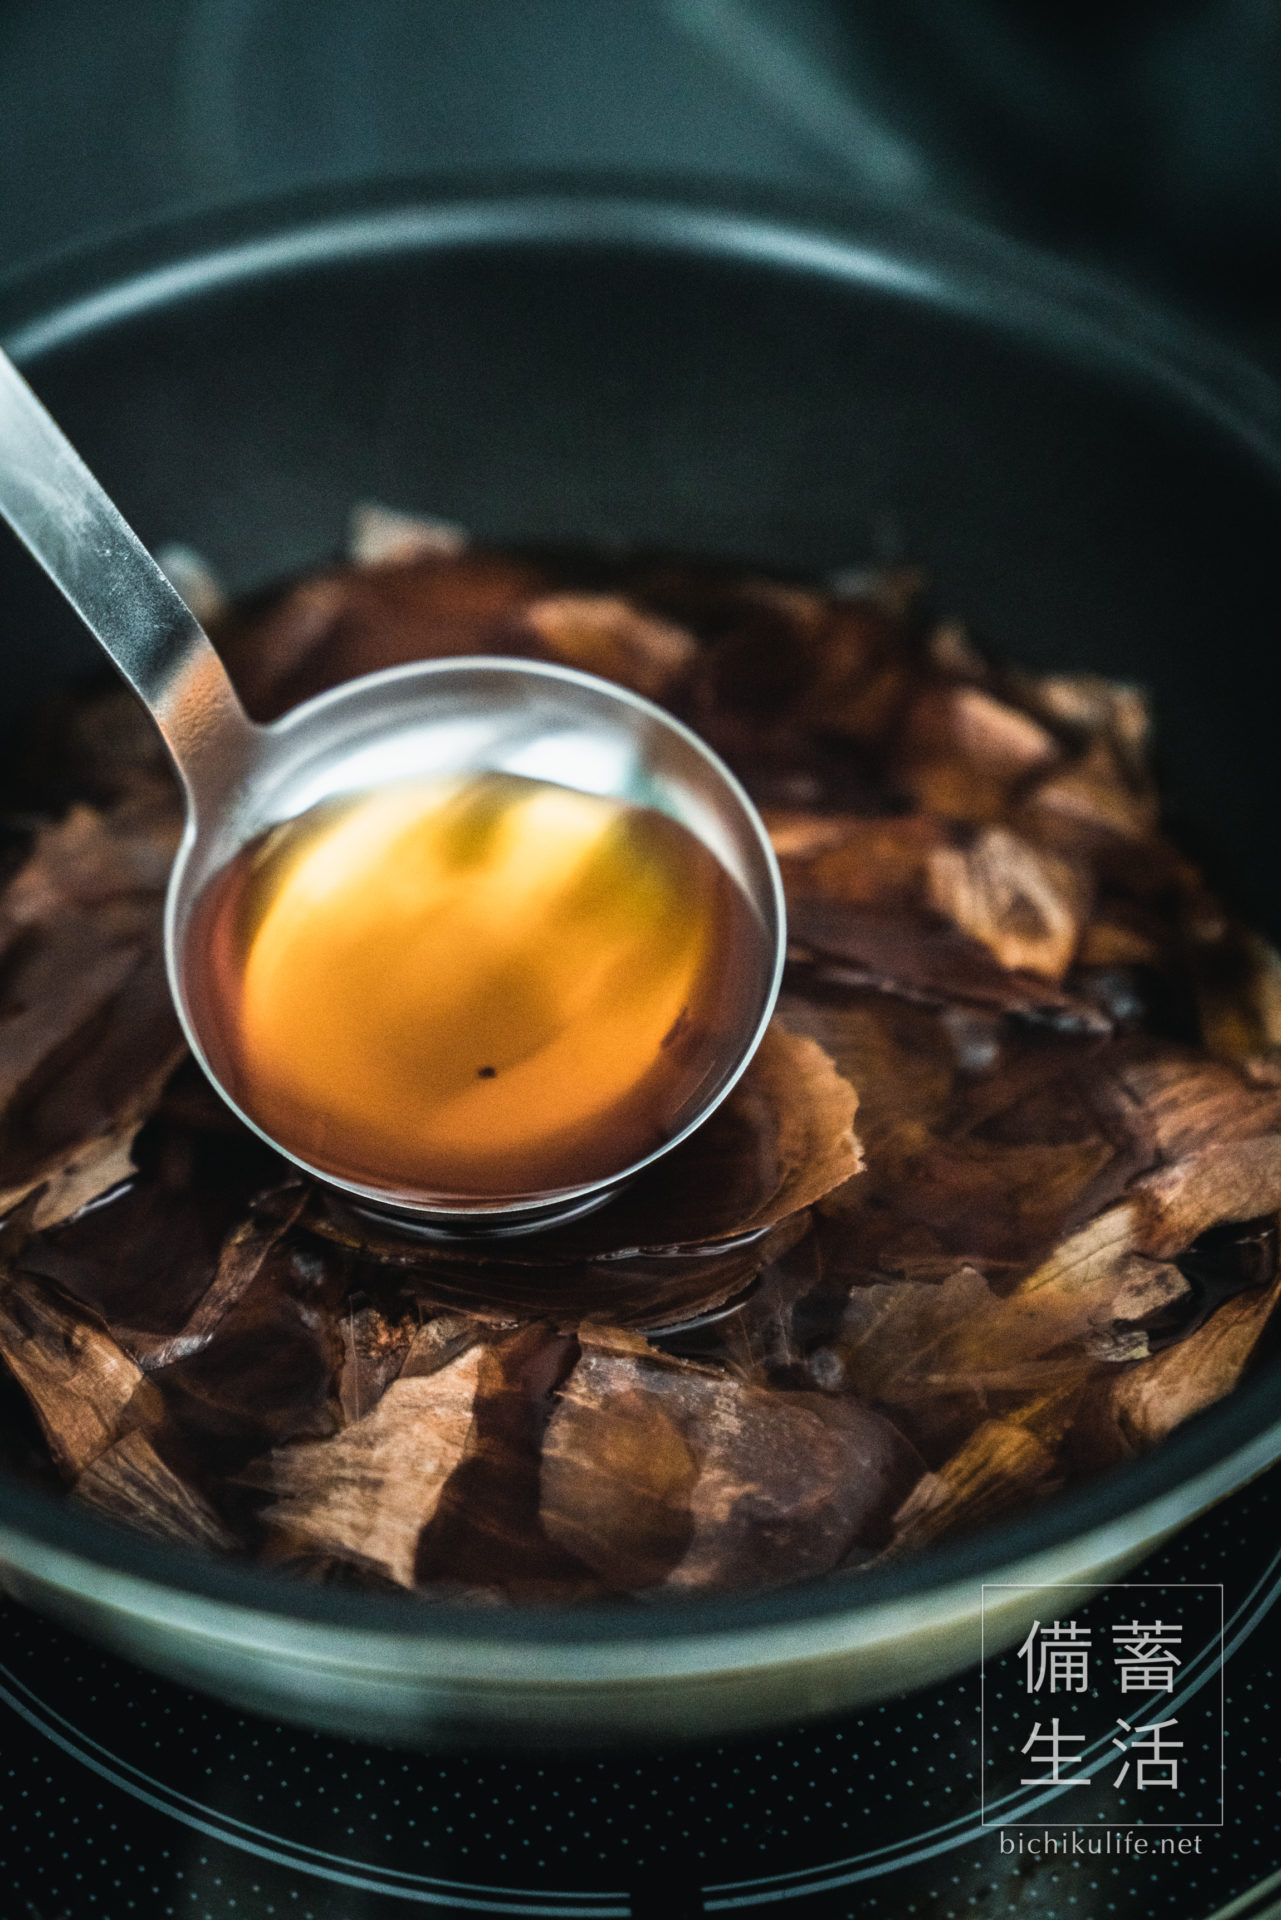 幻のたまねぎ 札幌黄のレシピ、玉ねぎの皮茶の作り方